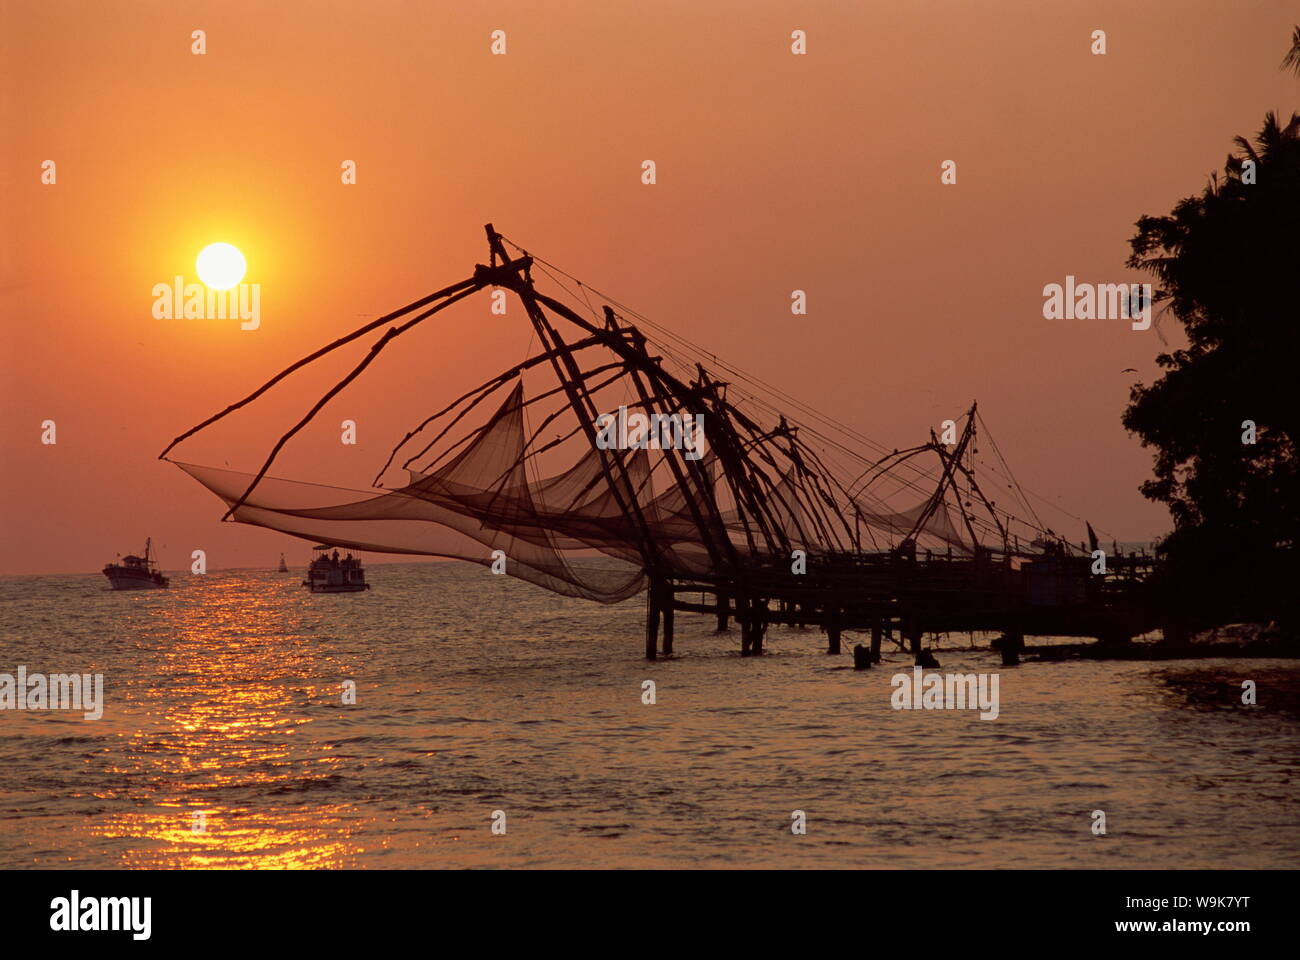 Chinese fishing nets at sunset, Fort Cochin, Kerala state, India, Asia Stock Photo